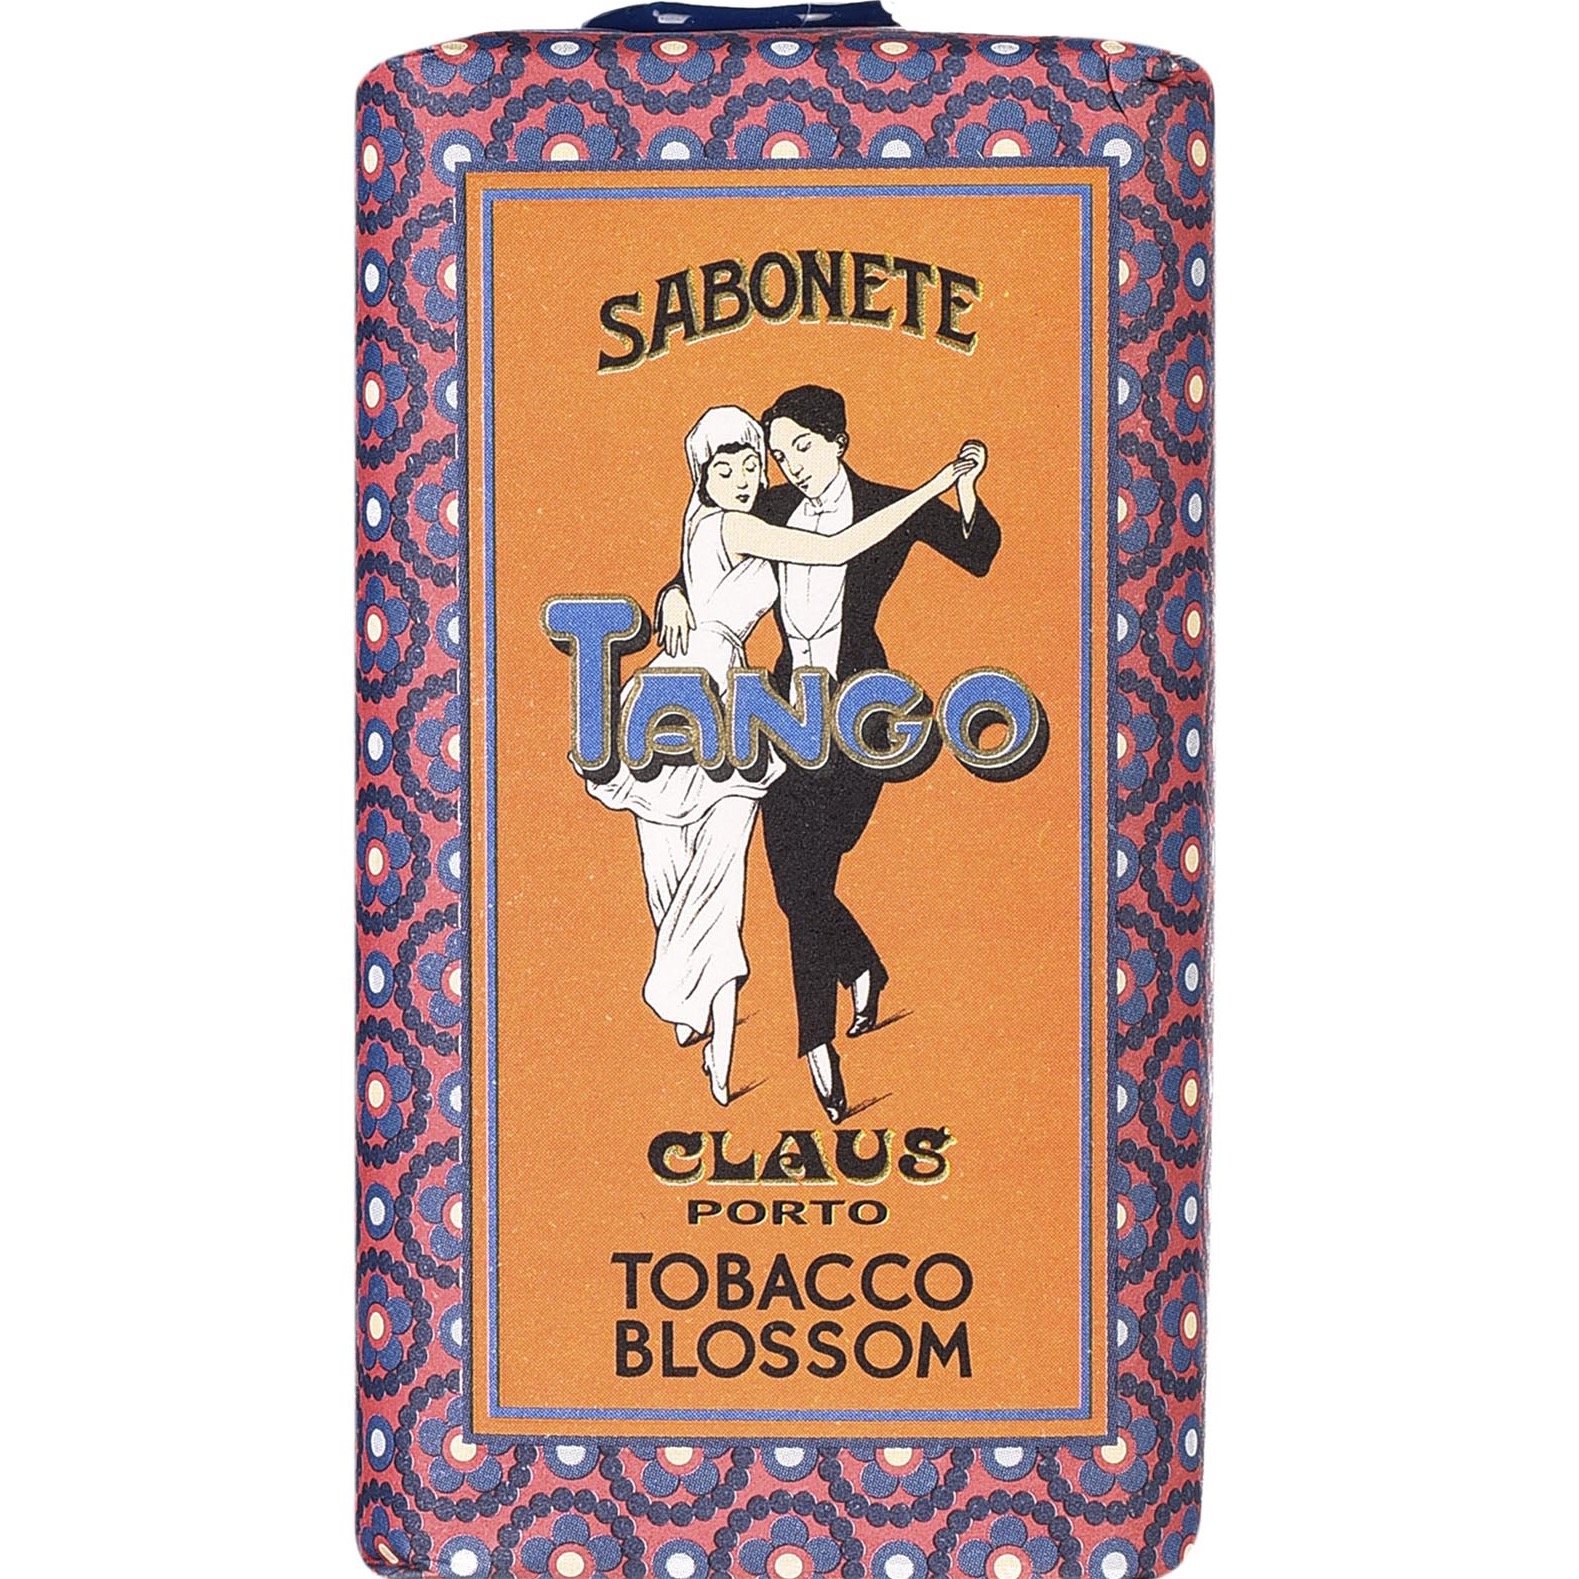 Claus Porto Soap Bar Tango Tobacco Blossom 150g - 2.1 - CP-F009W